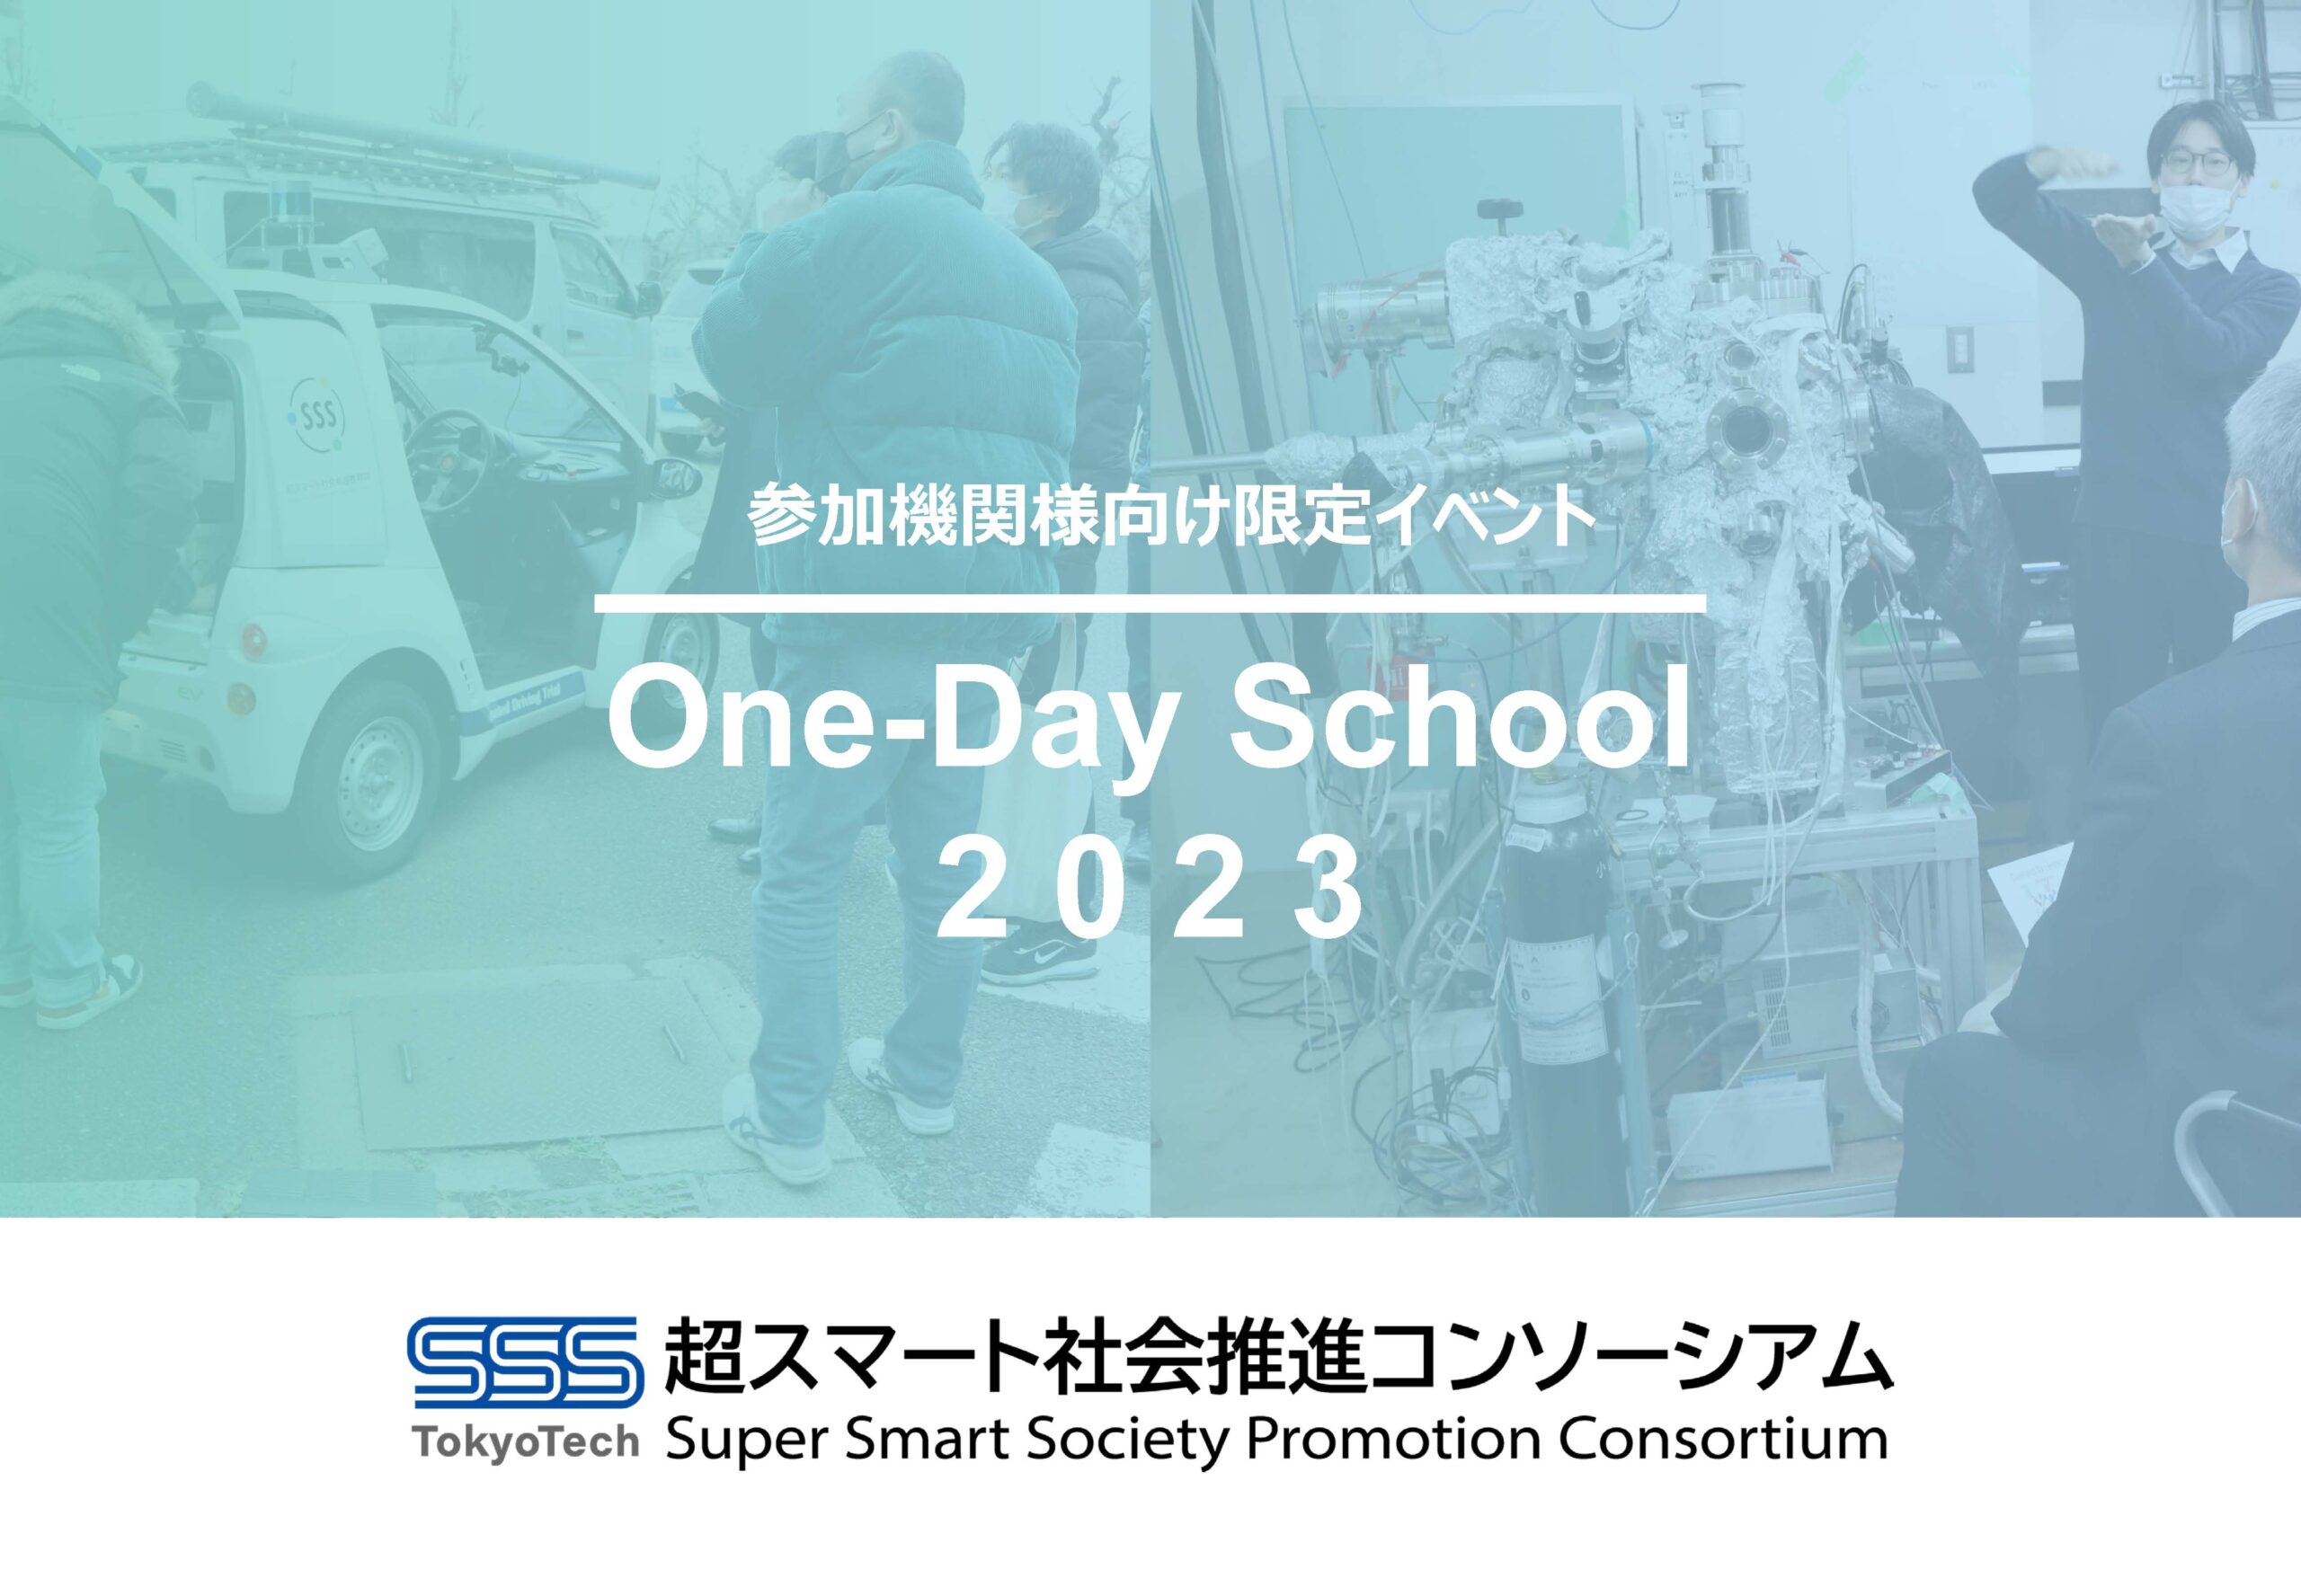 【参加機関限定イベント】One-Day School 2023